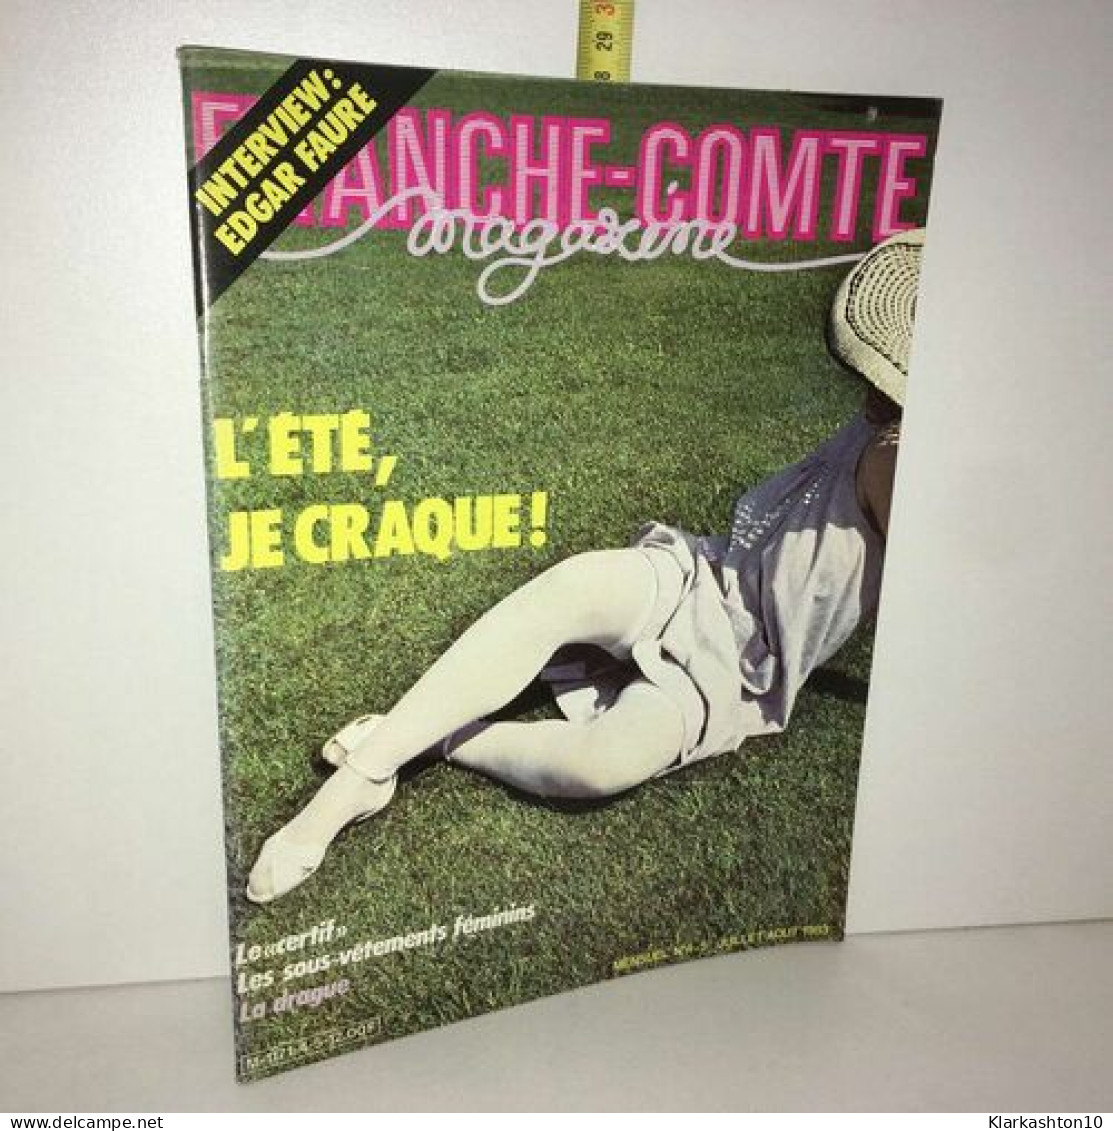 Revue FRANCHE COMTE MAGAZINE N 4 5 Juillet 1983 EDGAR FAURE L'ETE - Non Classés